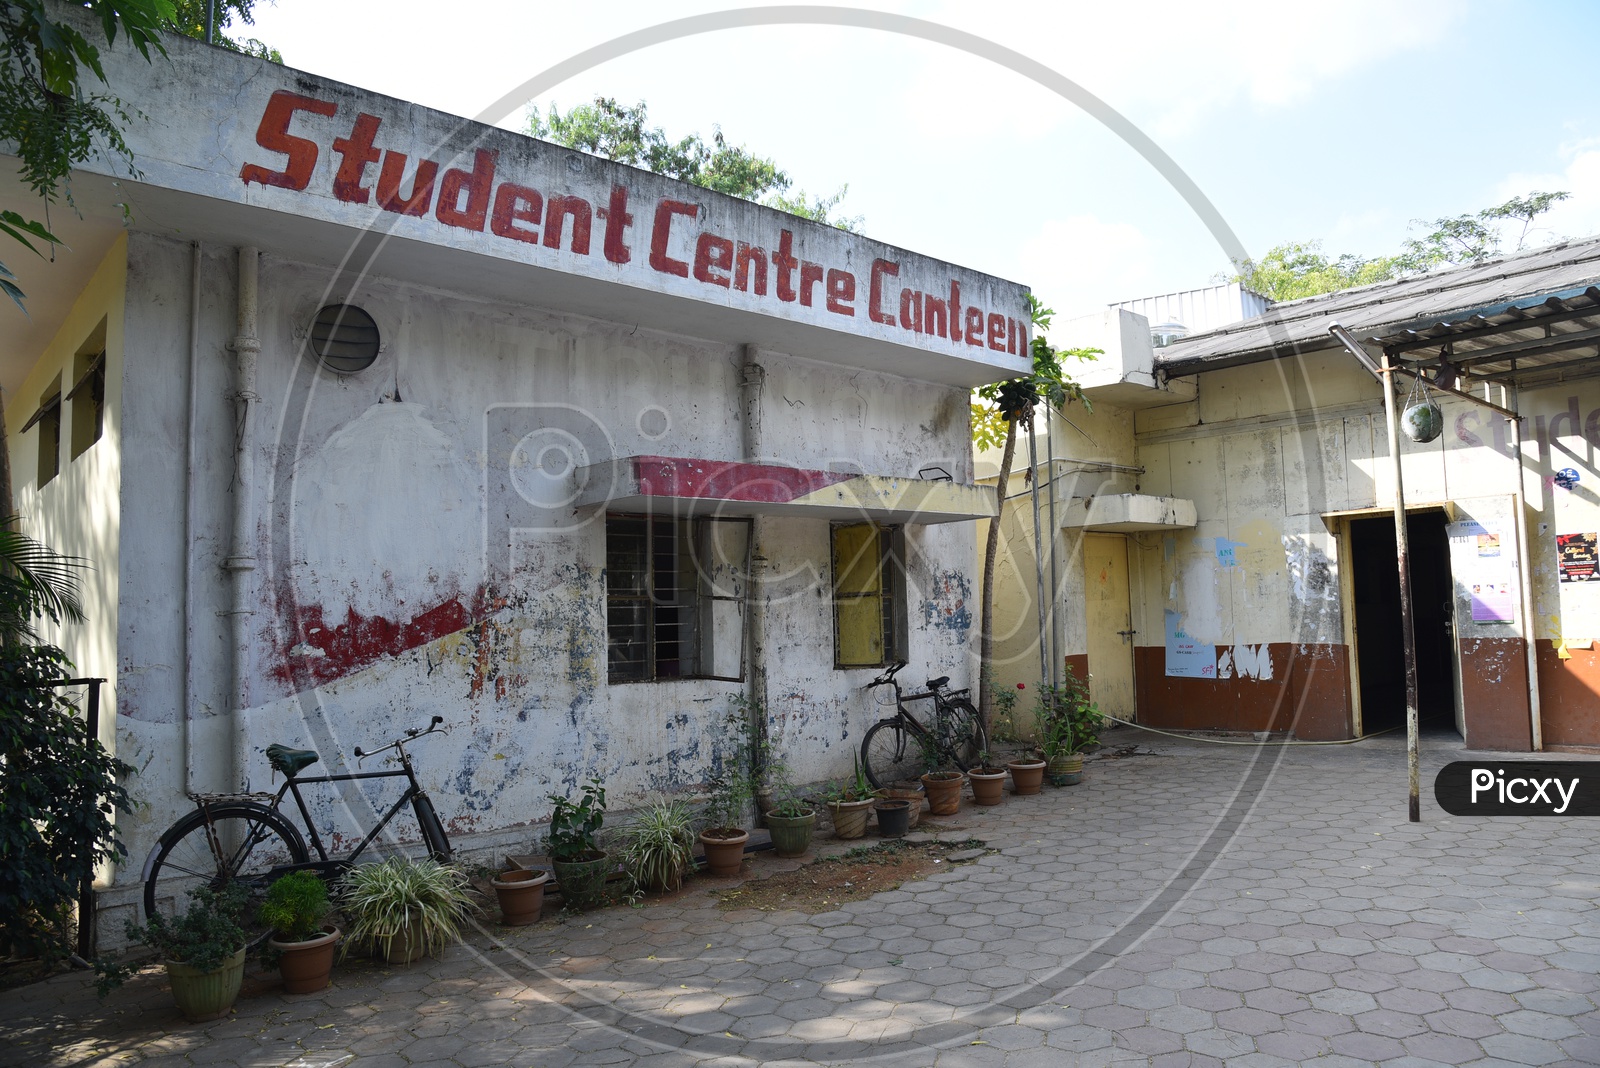 Student Center Canteen